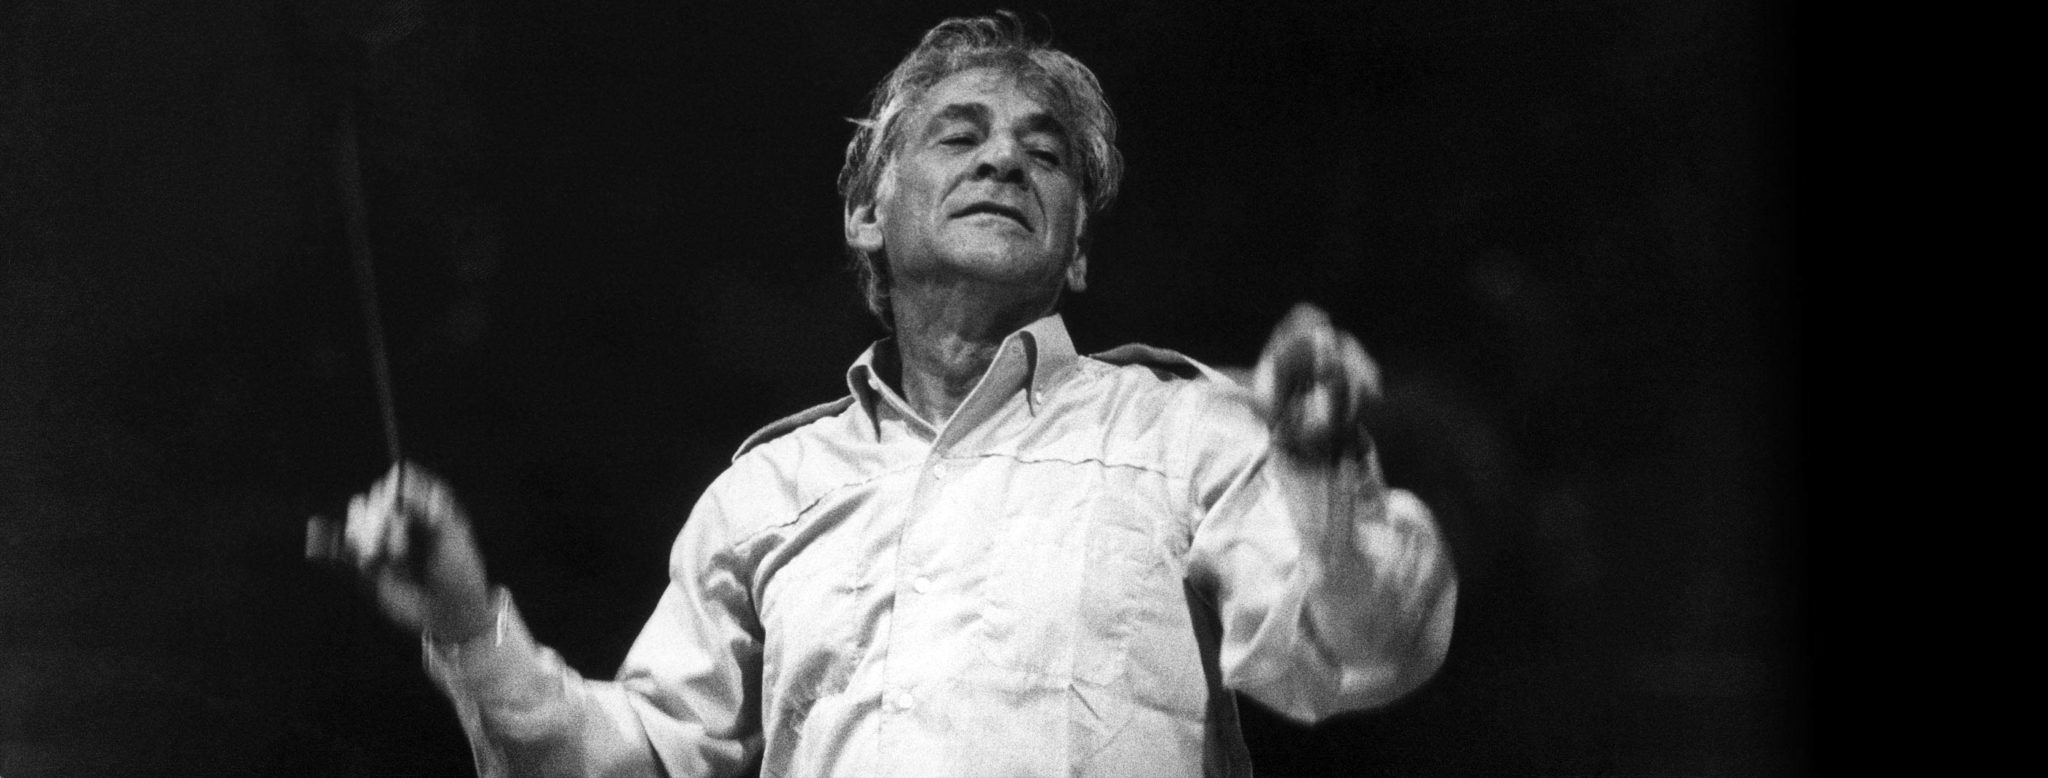 Leonard Bernstein at the Salzburg Festival, August 13, 1975. (Credit: Jean-Claude Sauer/Paris Match/Getty Images)